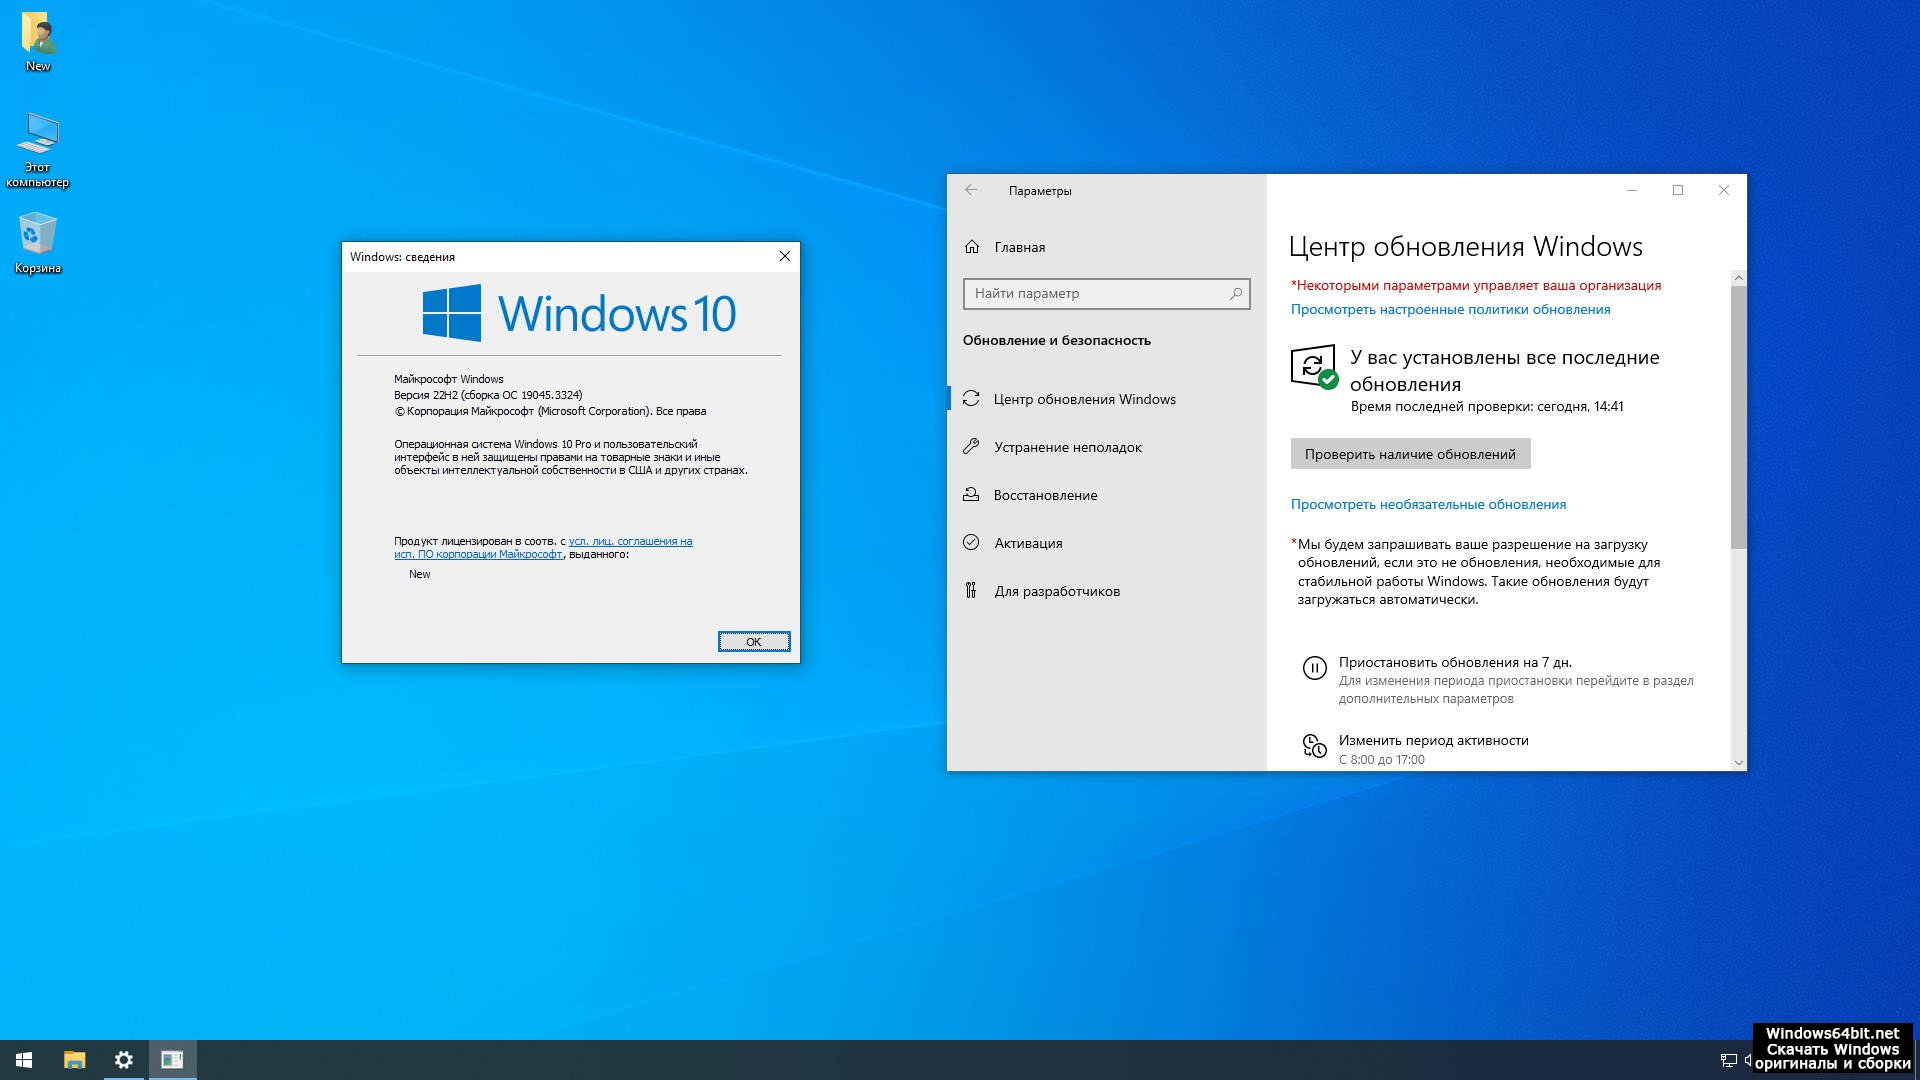 Windows 10 pro 22h2 sanlex. Windows 10 x64 x86 официальные дистрибутивы 22h2 19045.3448 MSDN на русском установка. Win10_Pro_22h2_ru_19045_3803_x64_by_revision.